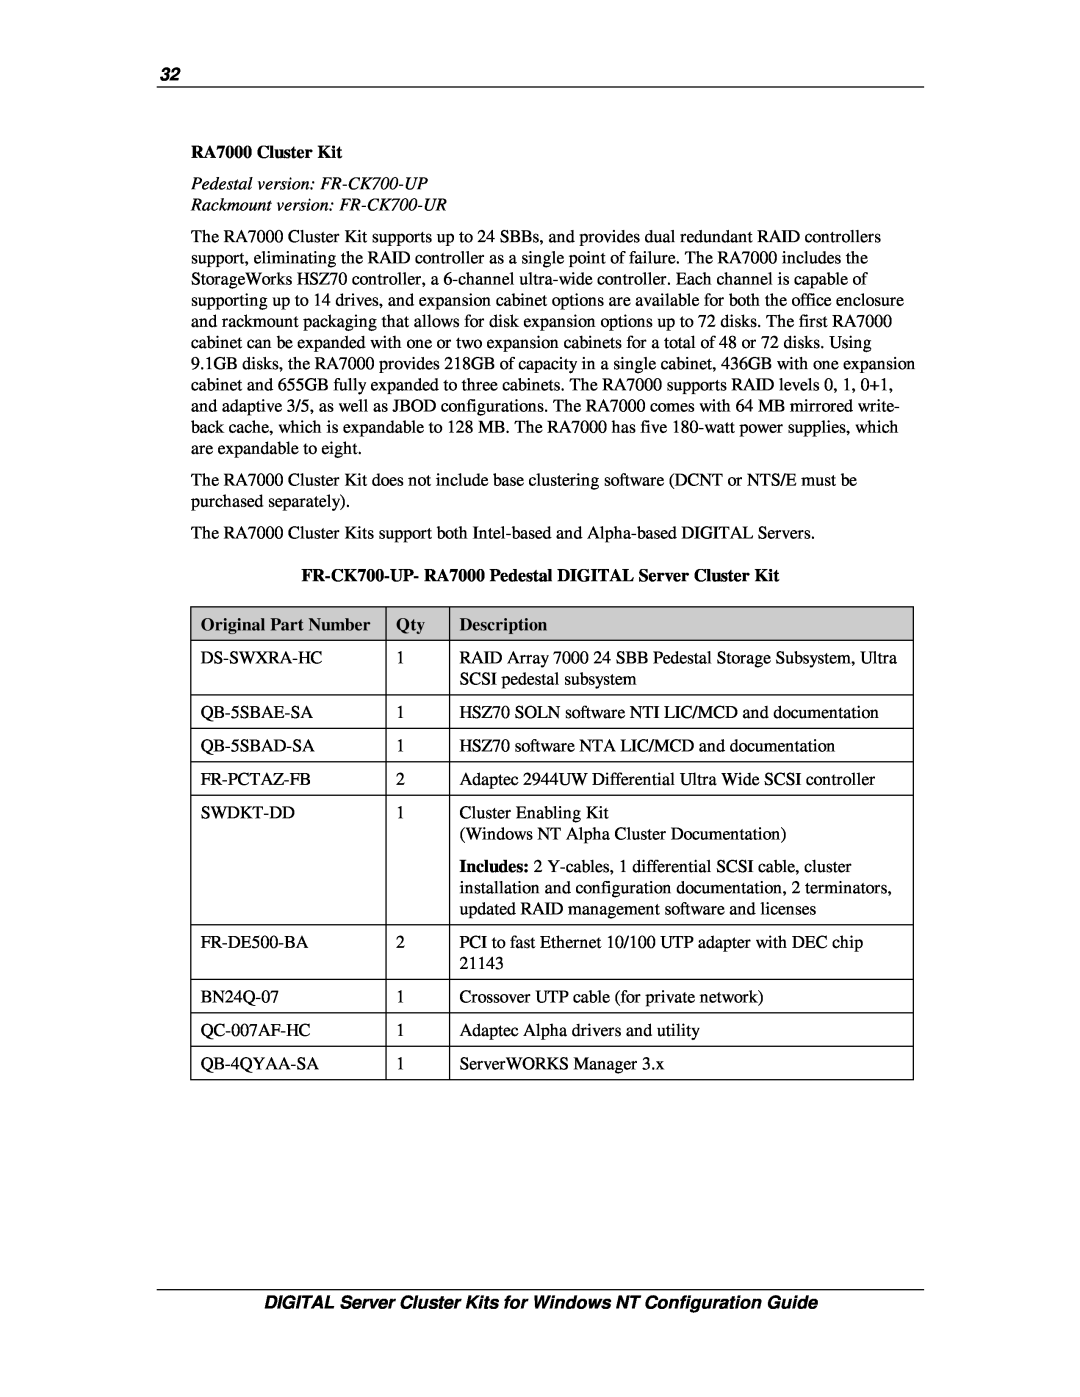 Compaq DIGITAL Server Cluster Kits for Windows NT manual RA7000 Cluster Kit, Original Part Number, Description 